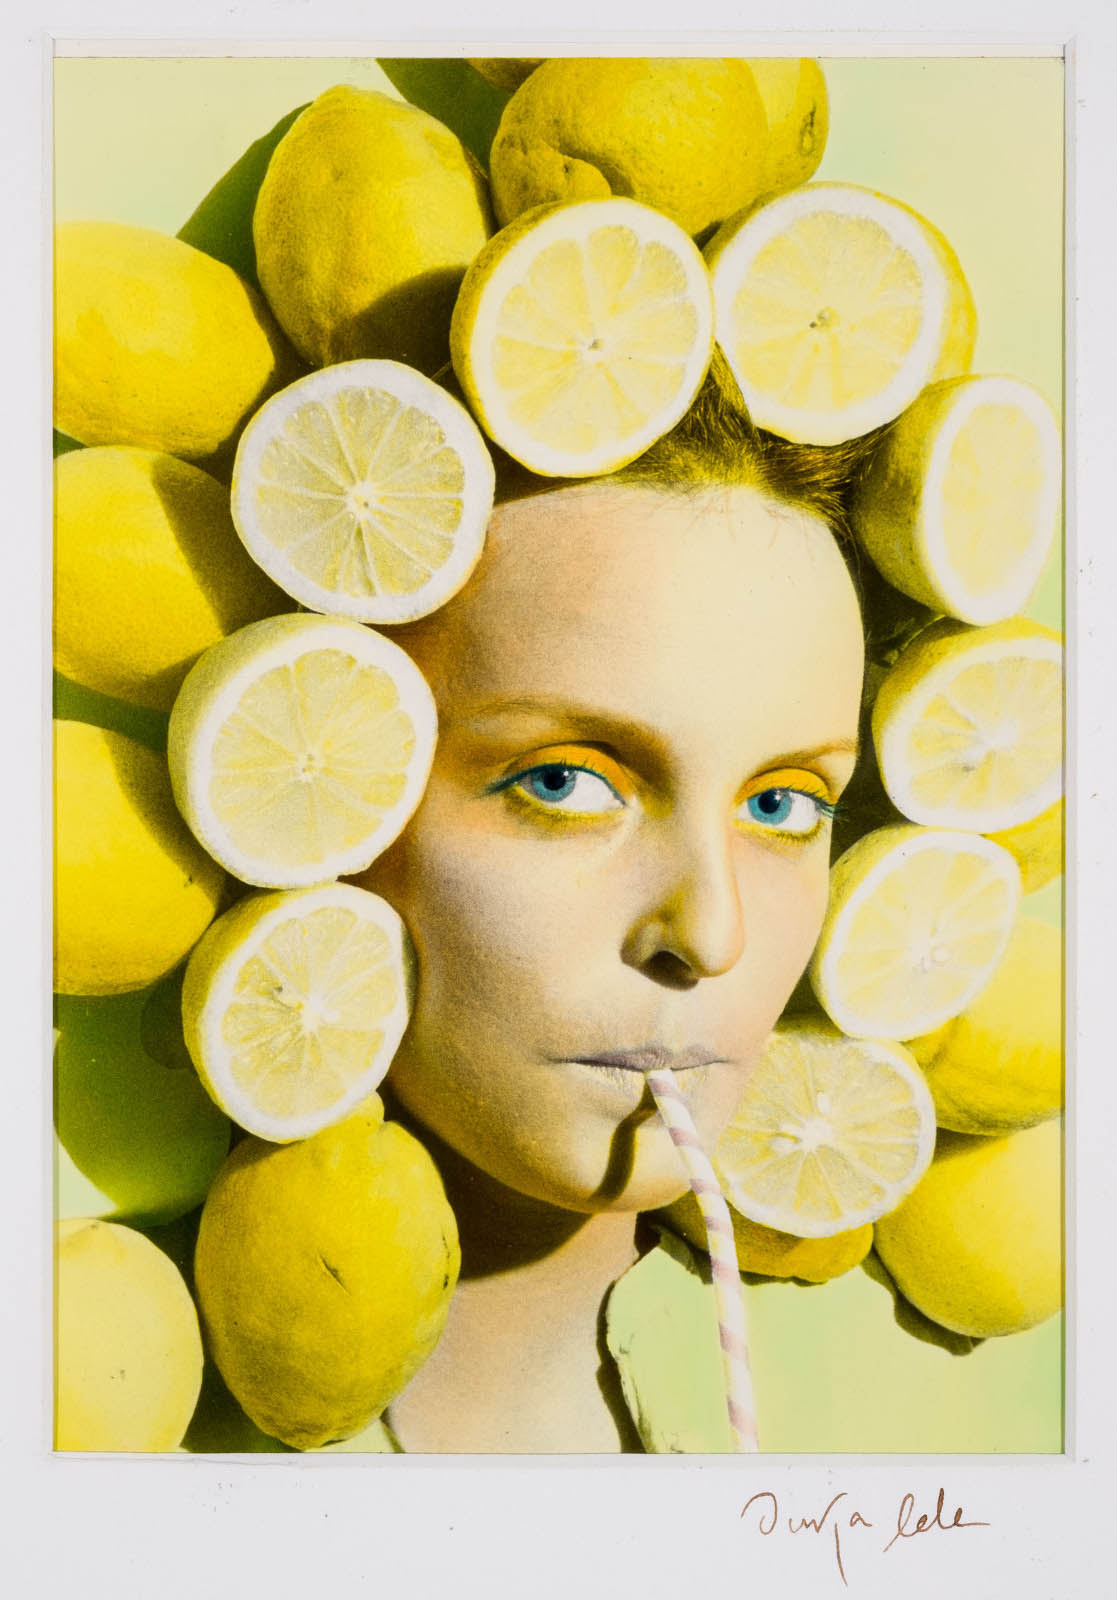 Ouka Lele, Chica con limones. Serie Peluquería, 1979. Salida: 2.000 euros. Remate: 4.000 euros